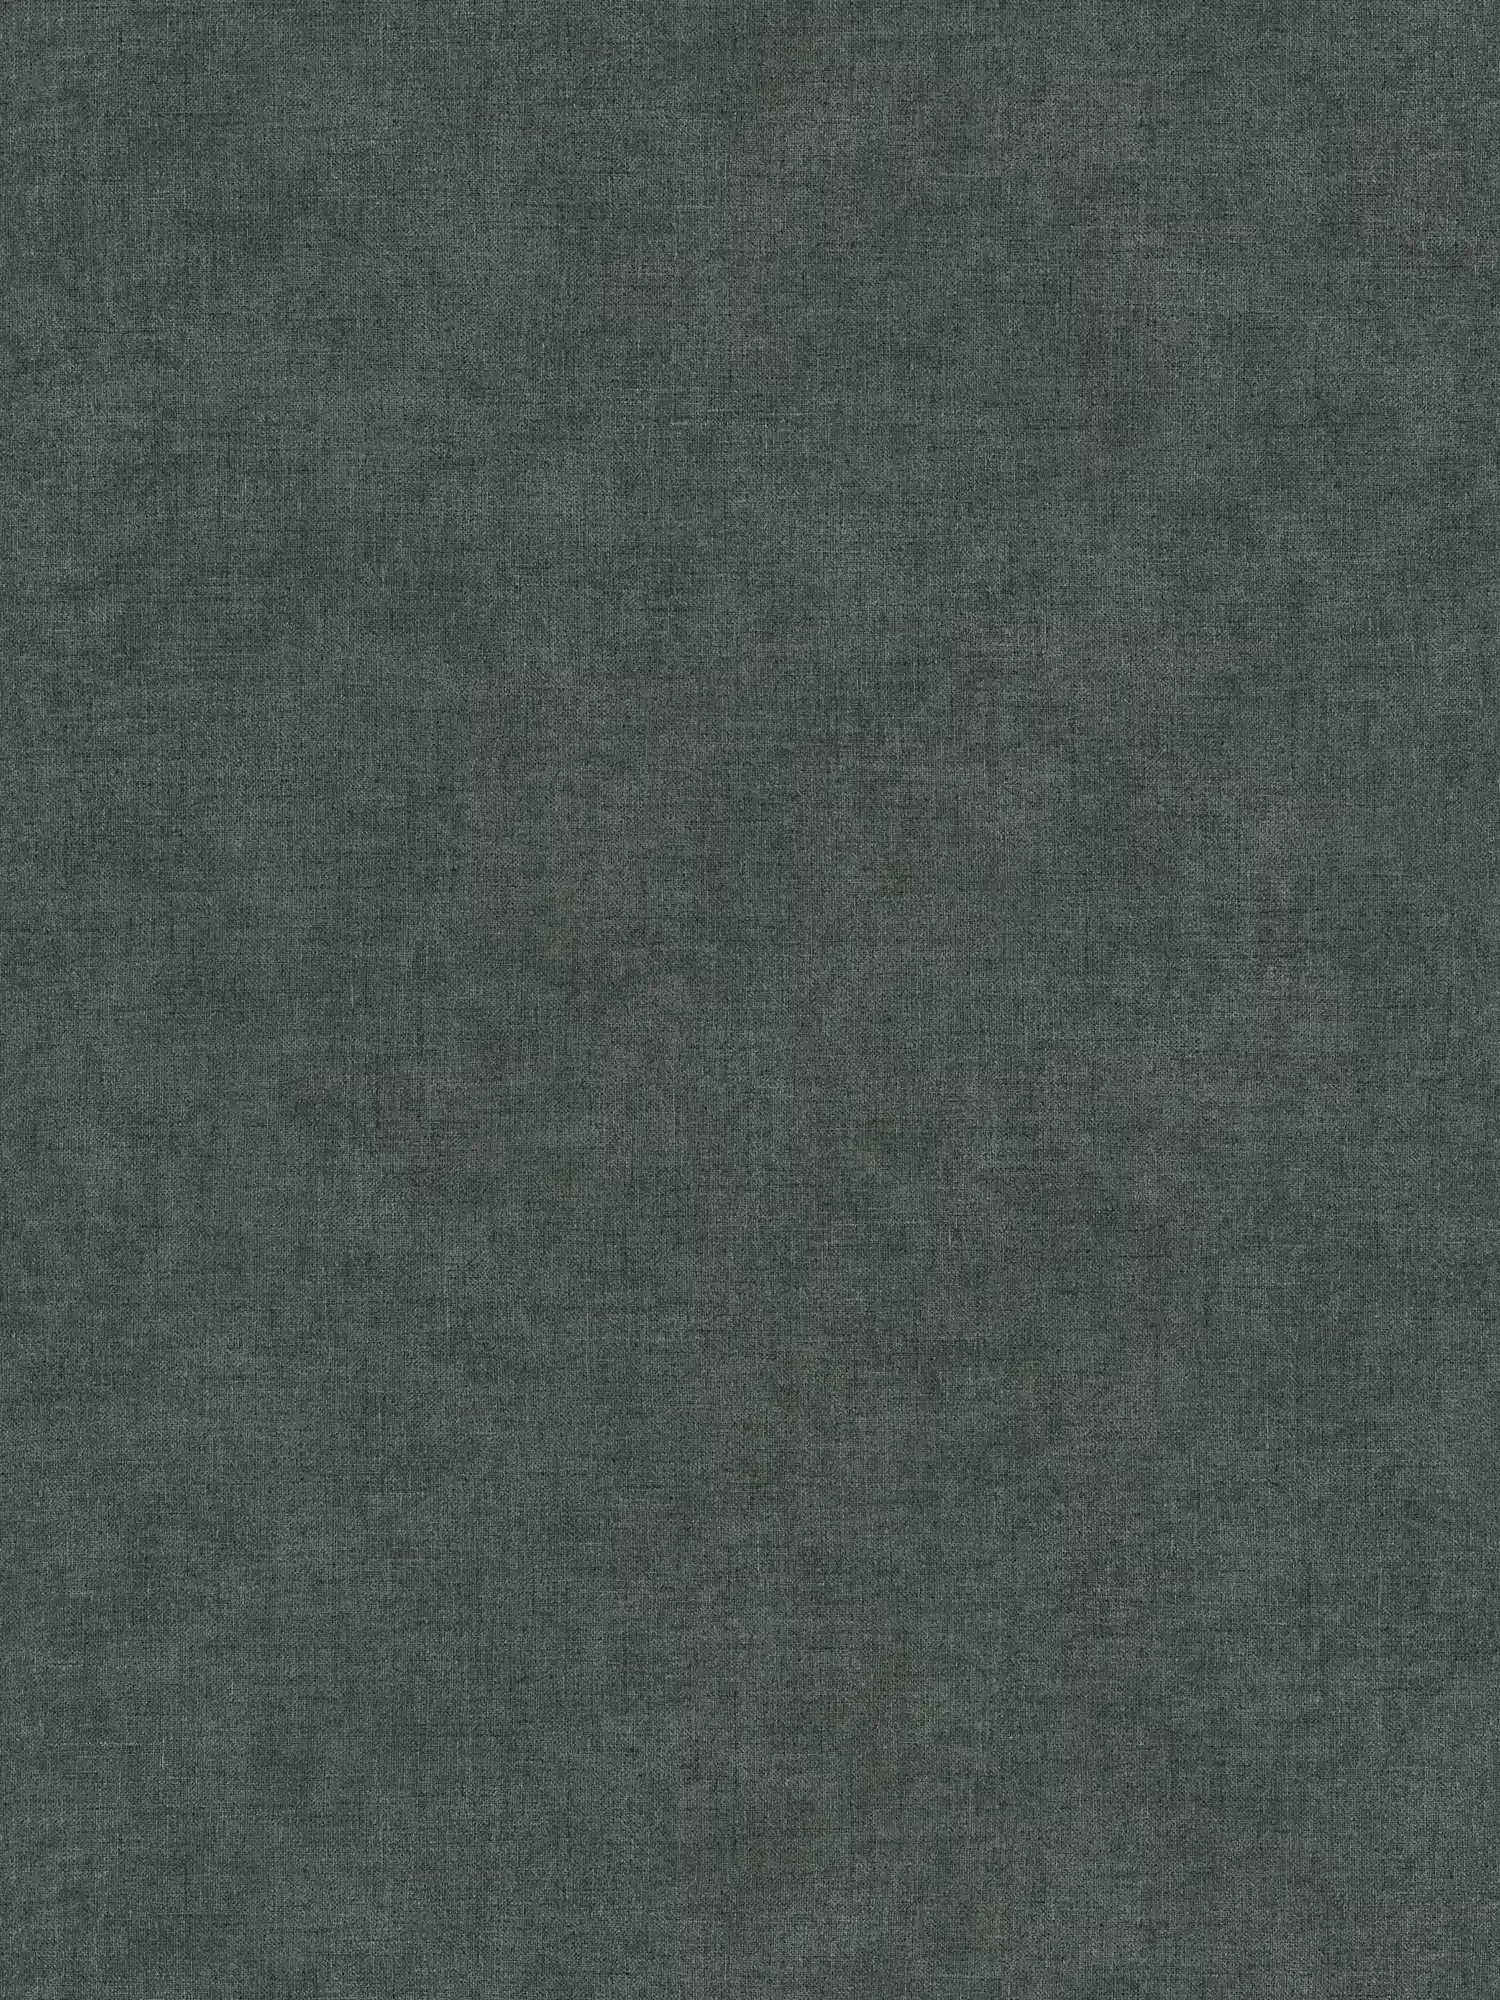 Antraciet behang zwart-grijs effen & mat
